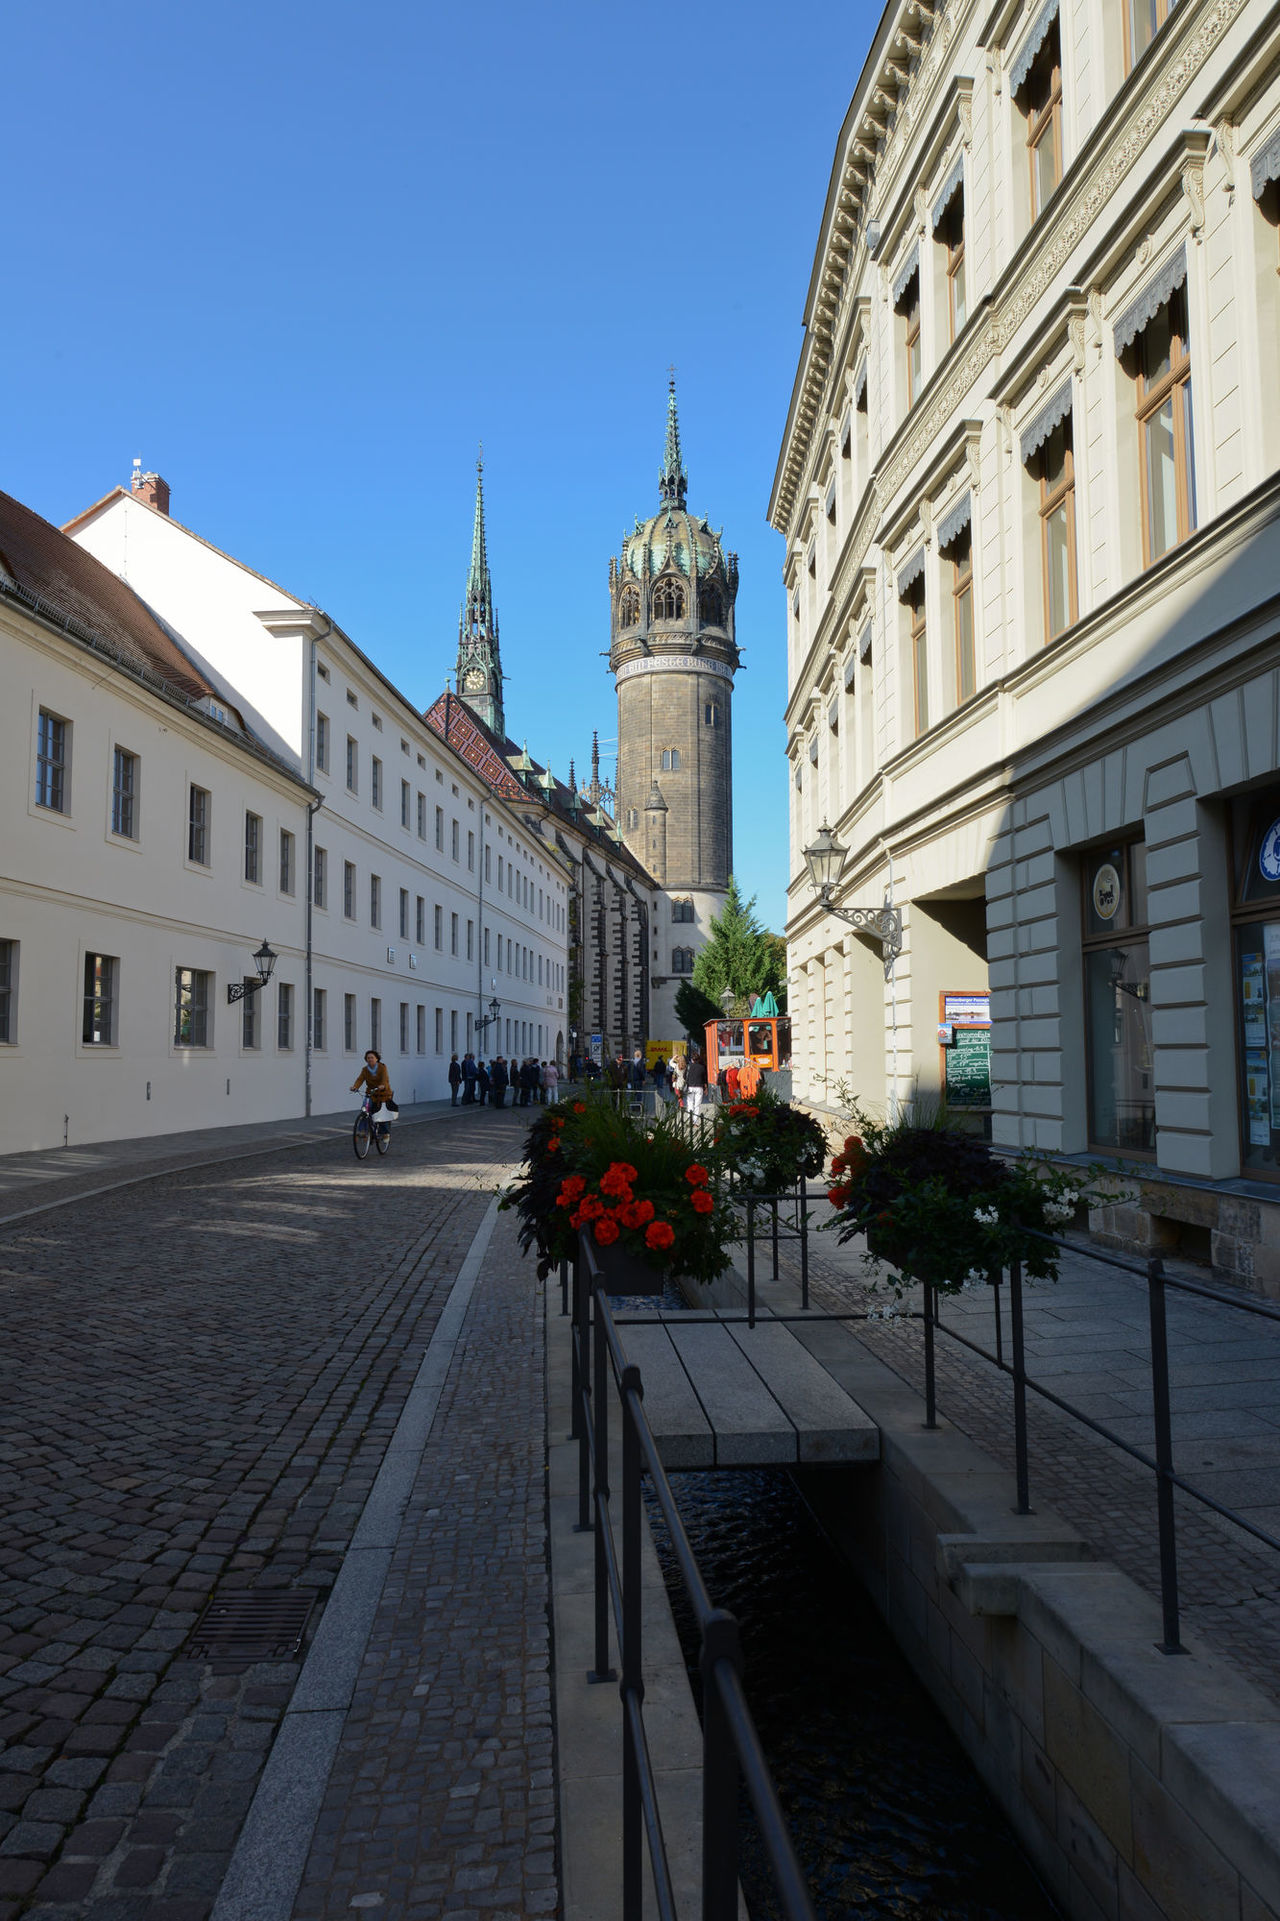 Blick auf die Schlosskirche Wittenberg durch eine Häuserflucht.